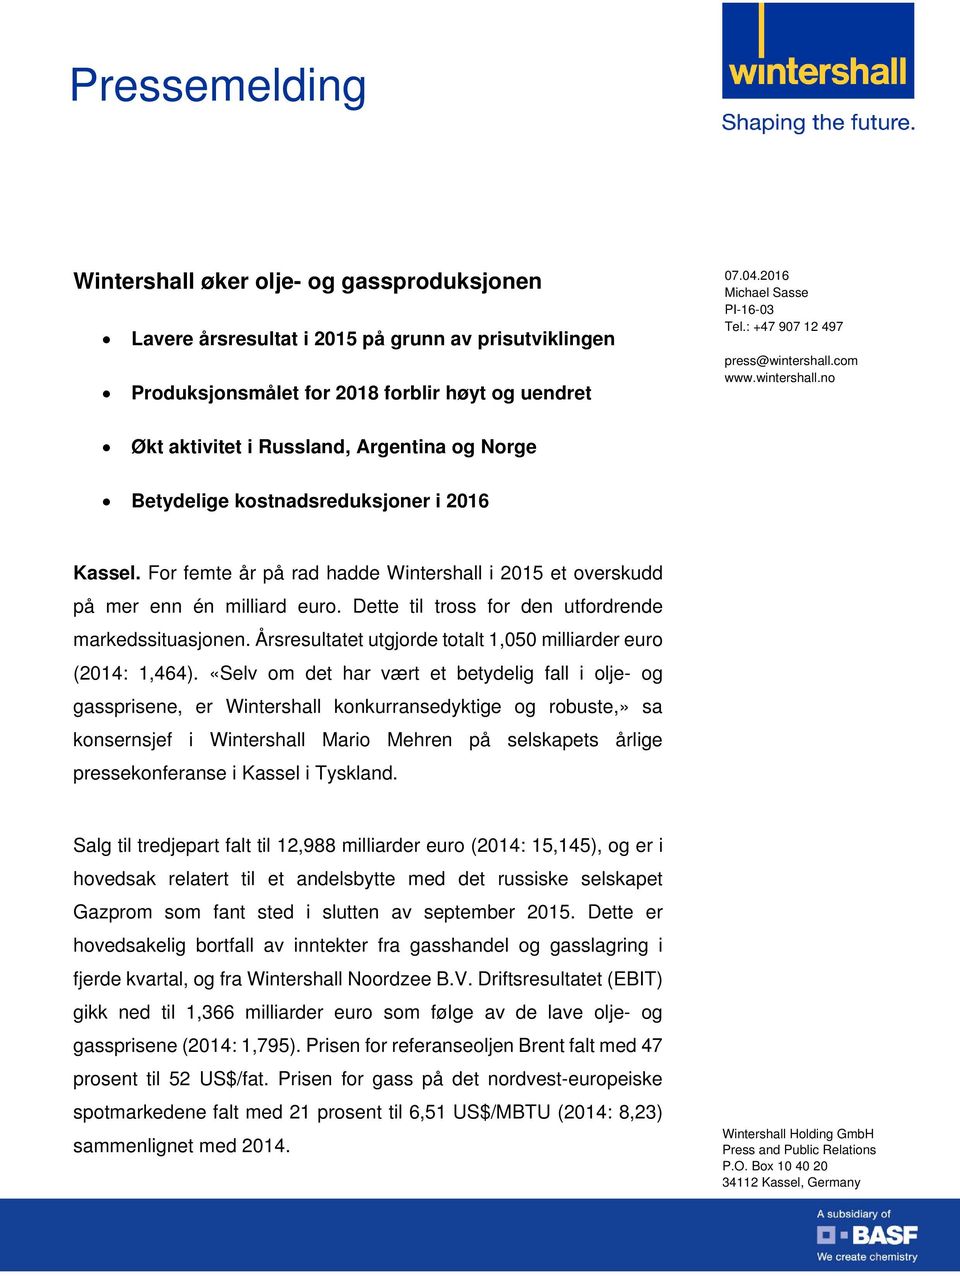 For femte år på rad hadde Wintershall i 2015 et overskudd på mer enn én milliard euro. Dette til tross for den utfordrende markedssituasjonen.